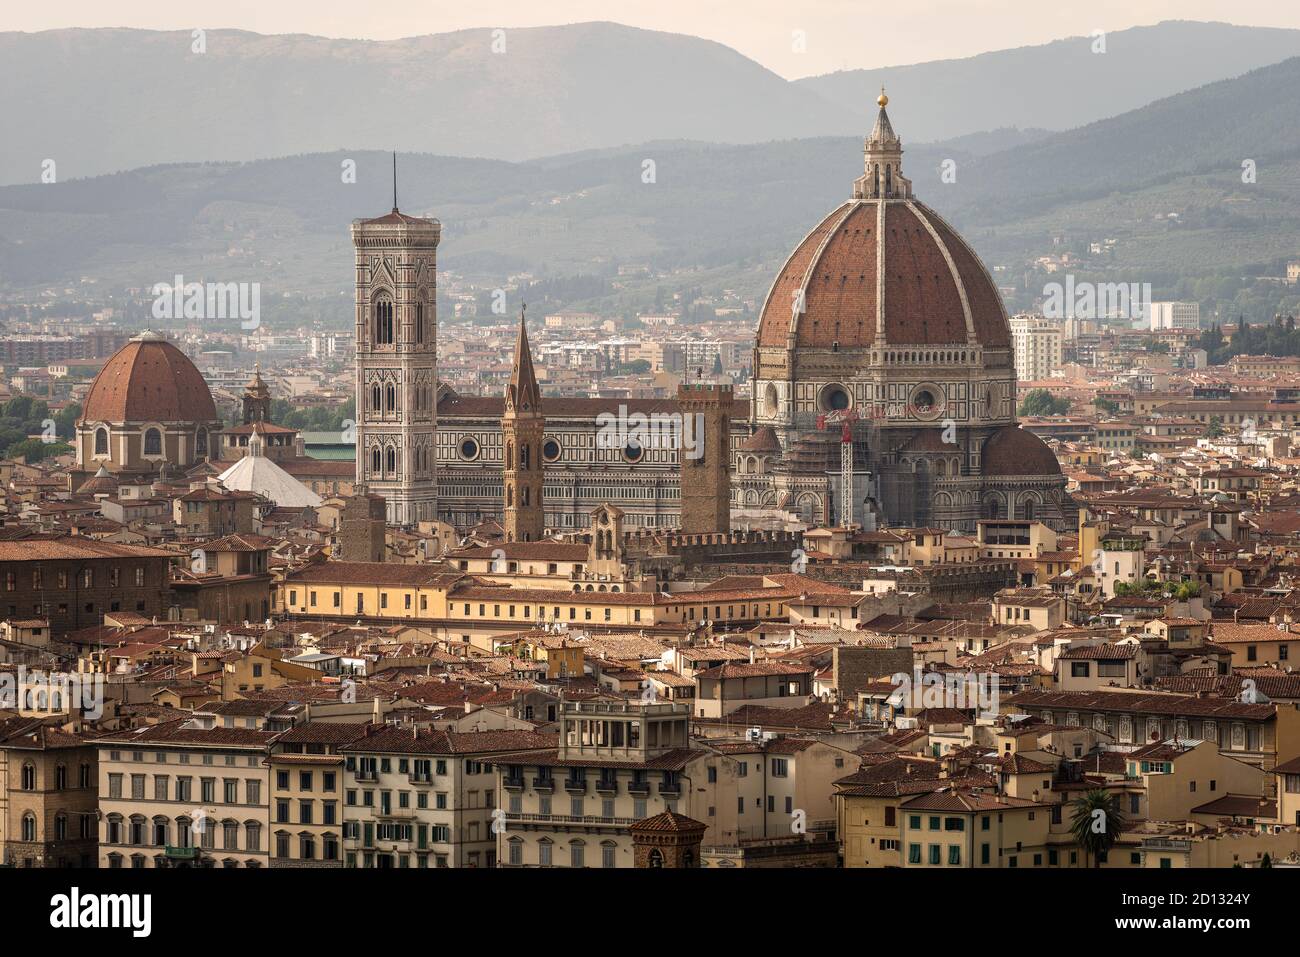 Città di Firenze con la Cattedrale, Santa Maria del Fiore e il campanile di Giotto (Campanile). Patrimonio dell'umanità dell'UNESCO, Toscana, Italia, Foto Stock